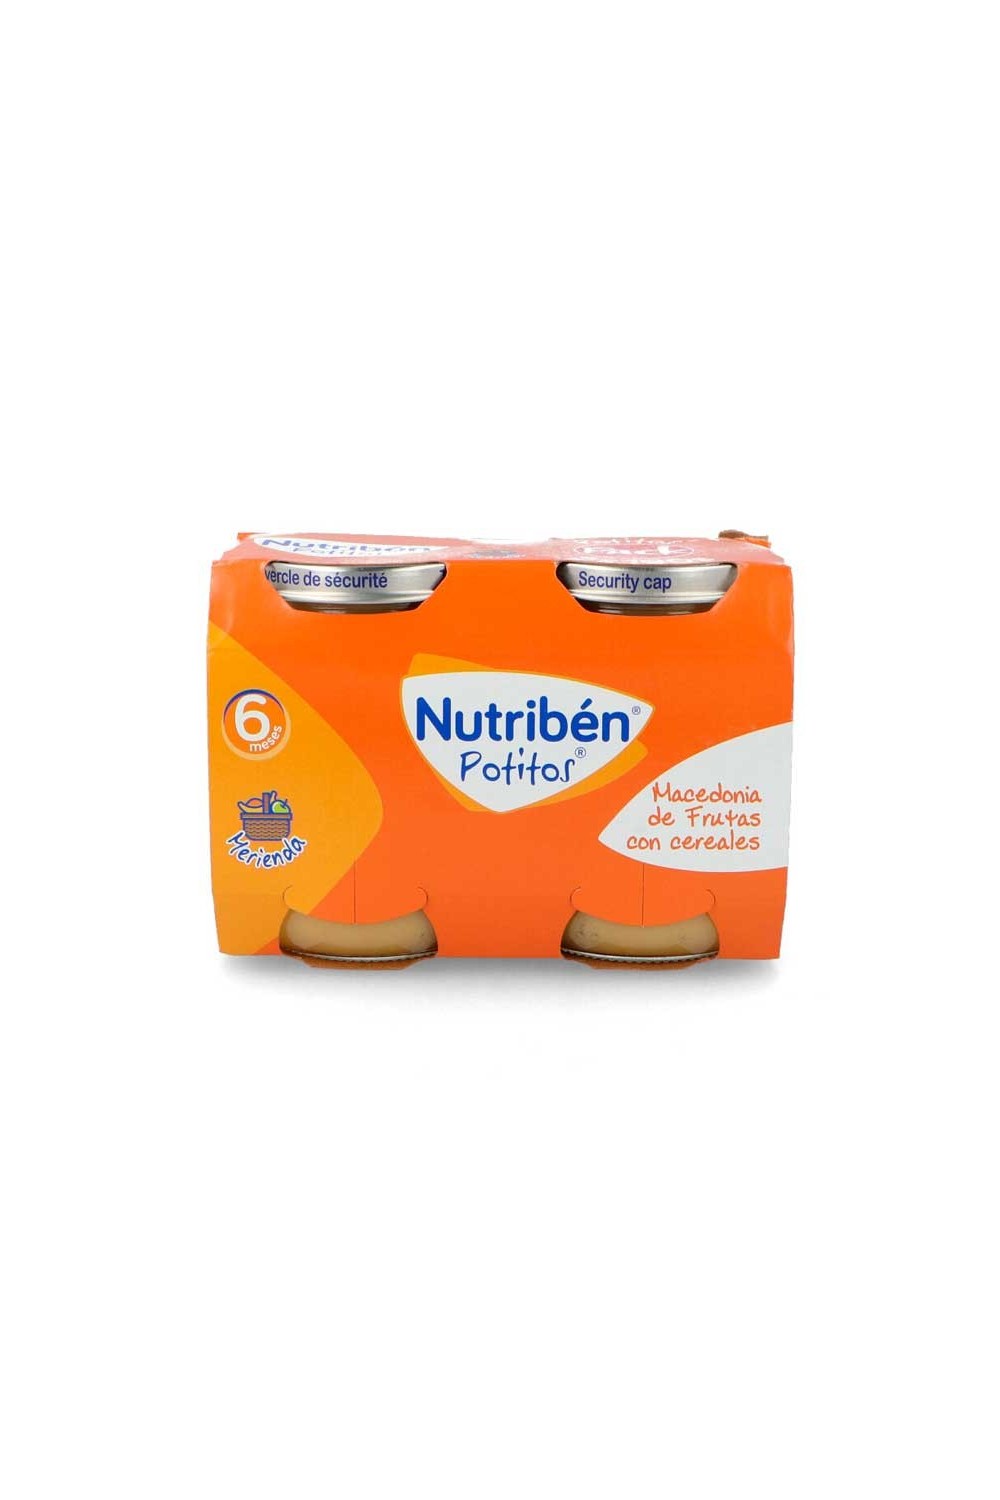 NUTRIBEN - Nutribén Potito Macedonia Fruit and Cereals 2x190g